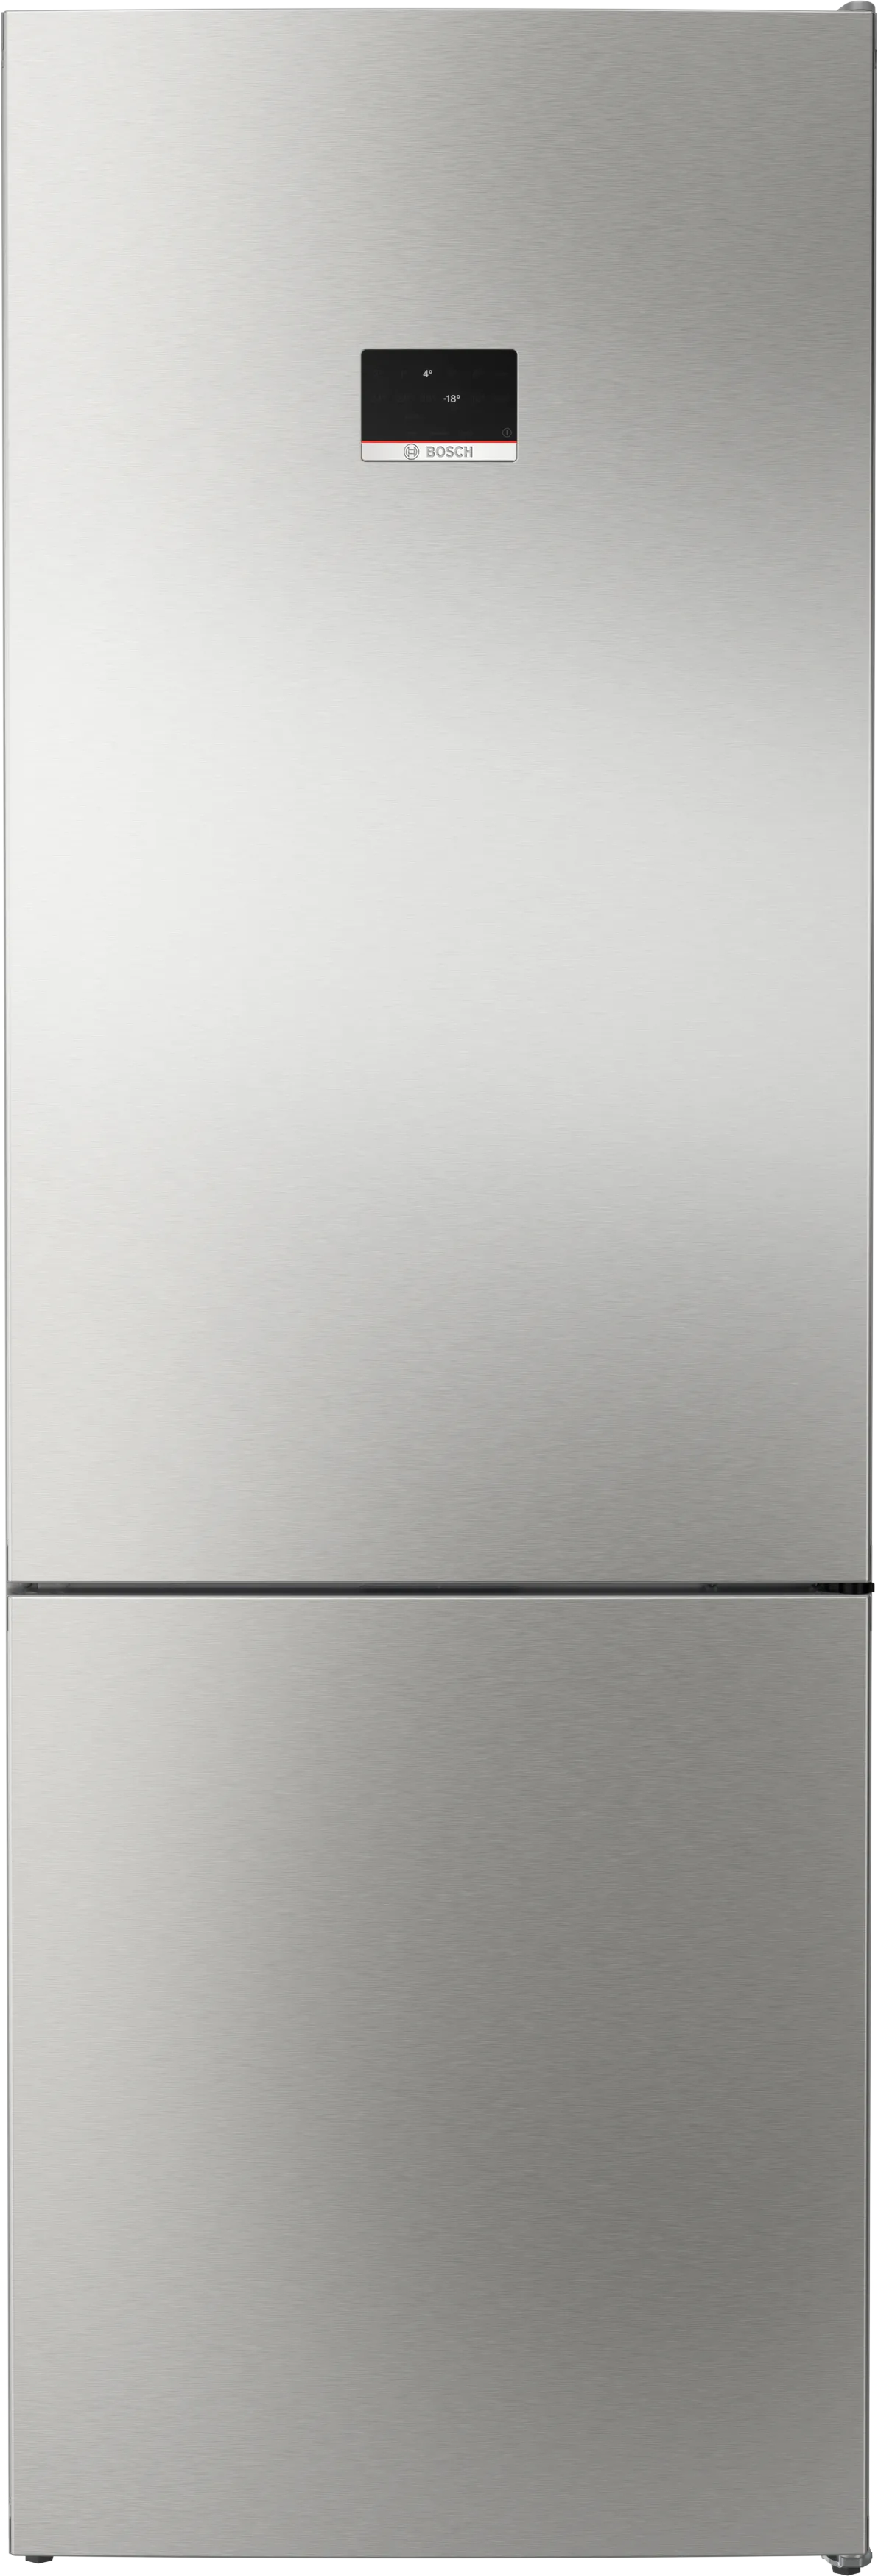 Серия 4 Отдельностоящий холодильник с нижней морозильной камерой 203 x 70 cm Нержавеющая сталь (с защитой от отпечатков пальцев) 